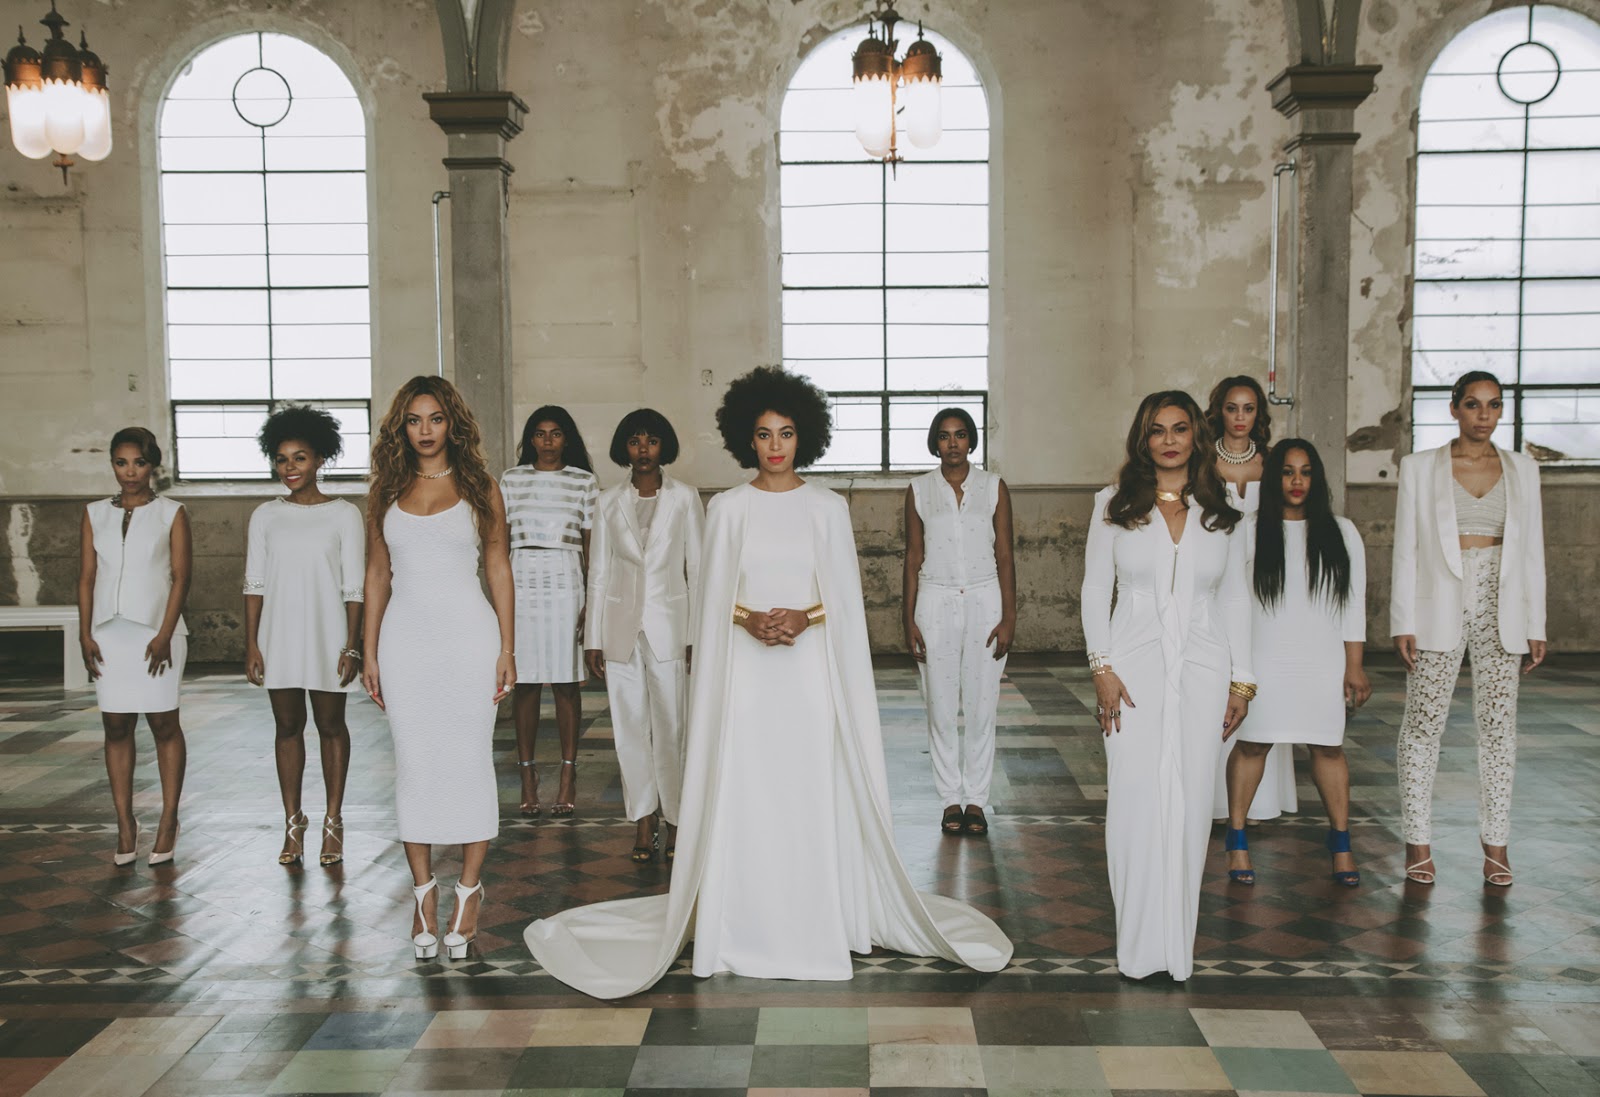 Solange Knowles: La mariée était en Afro